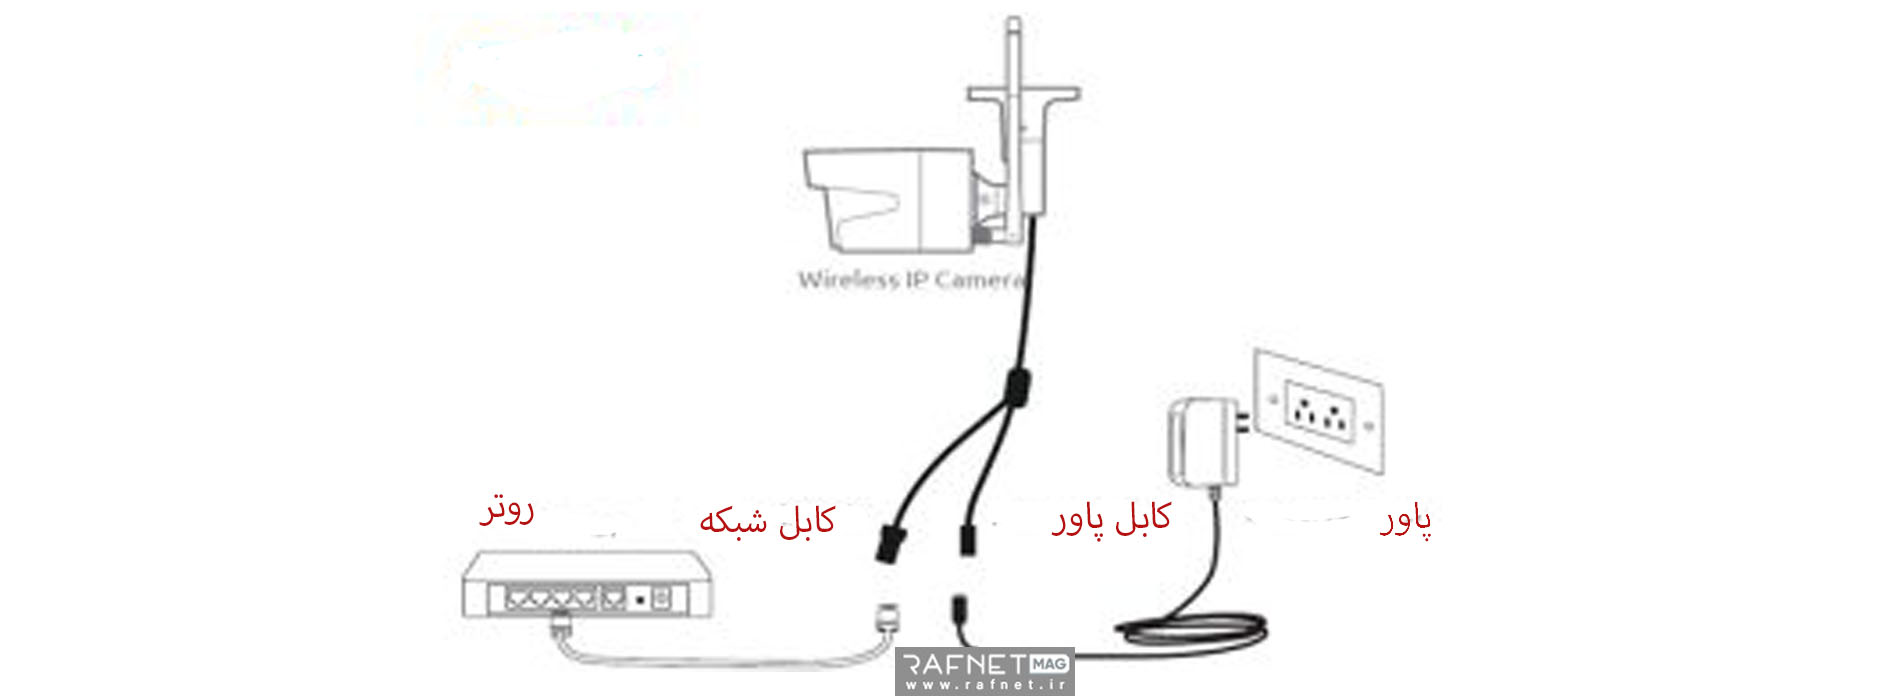 نحوه اتصال دوربین ای پی با کابل